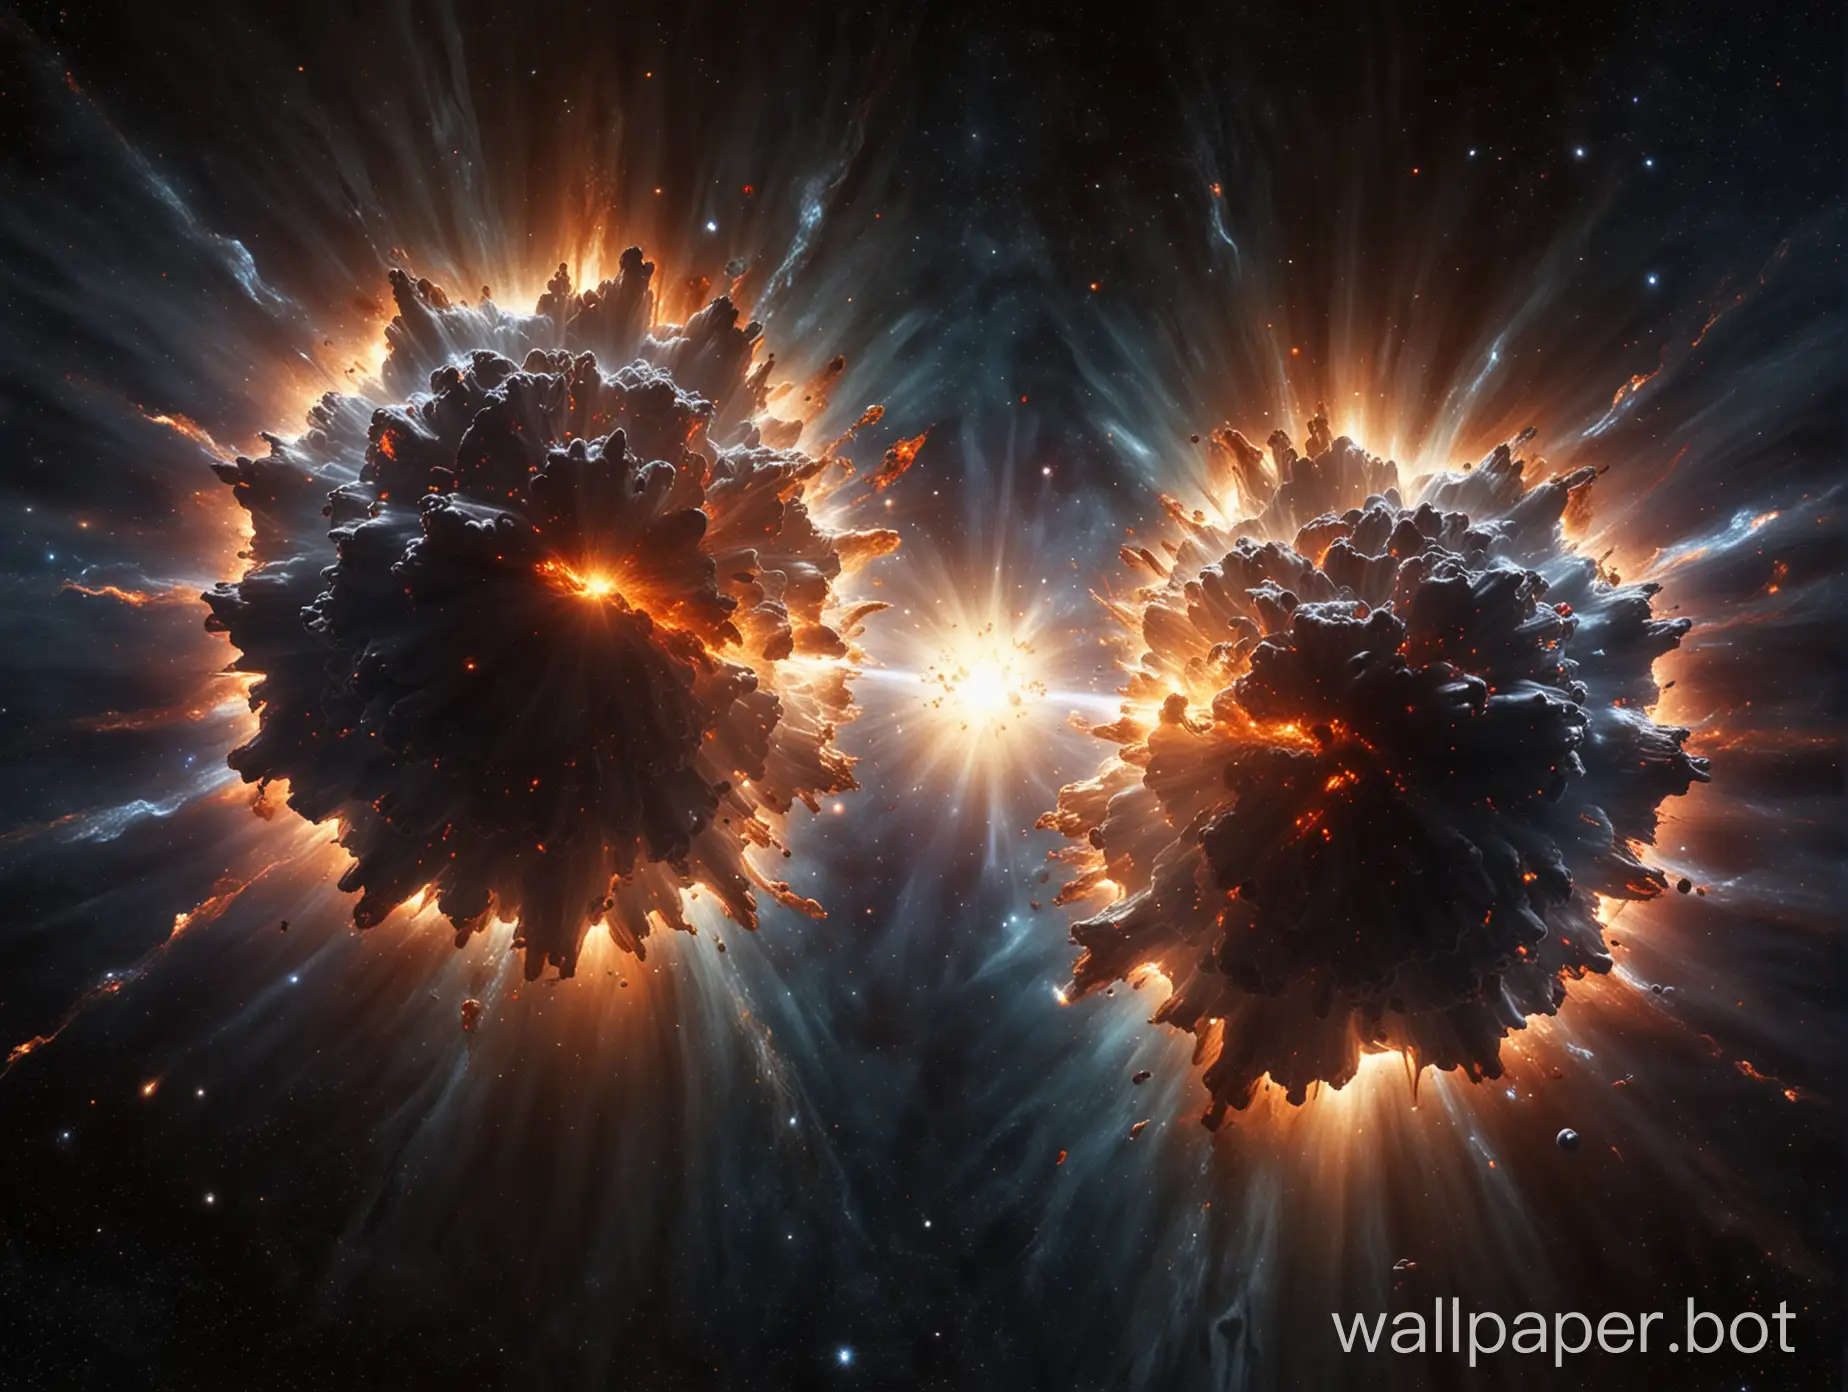 столкновение двух сверхновых звезд в космосе, фотореализм, взрывная волна расходится в разные стороны